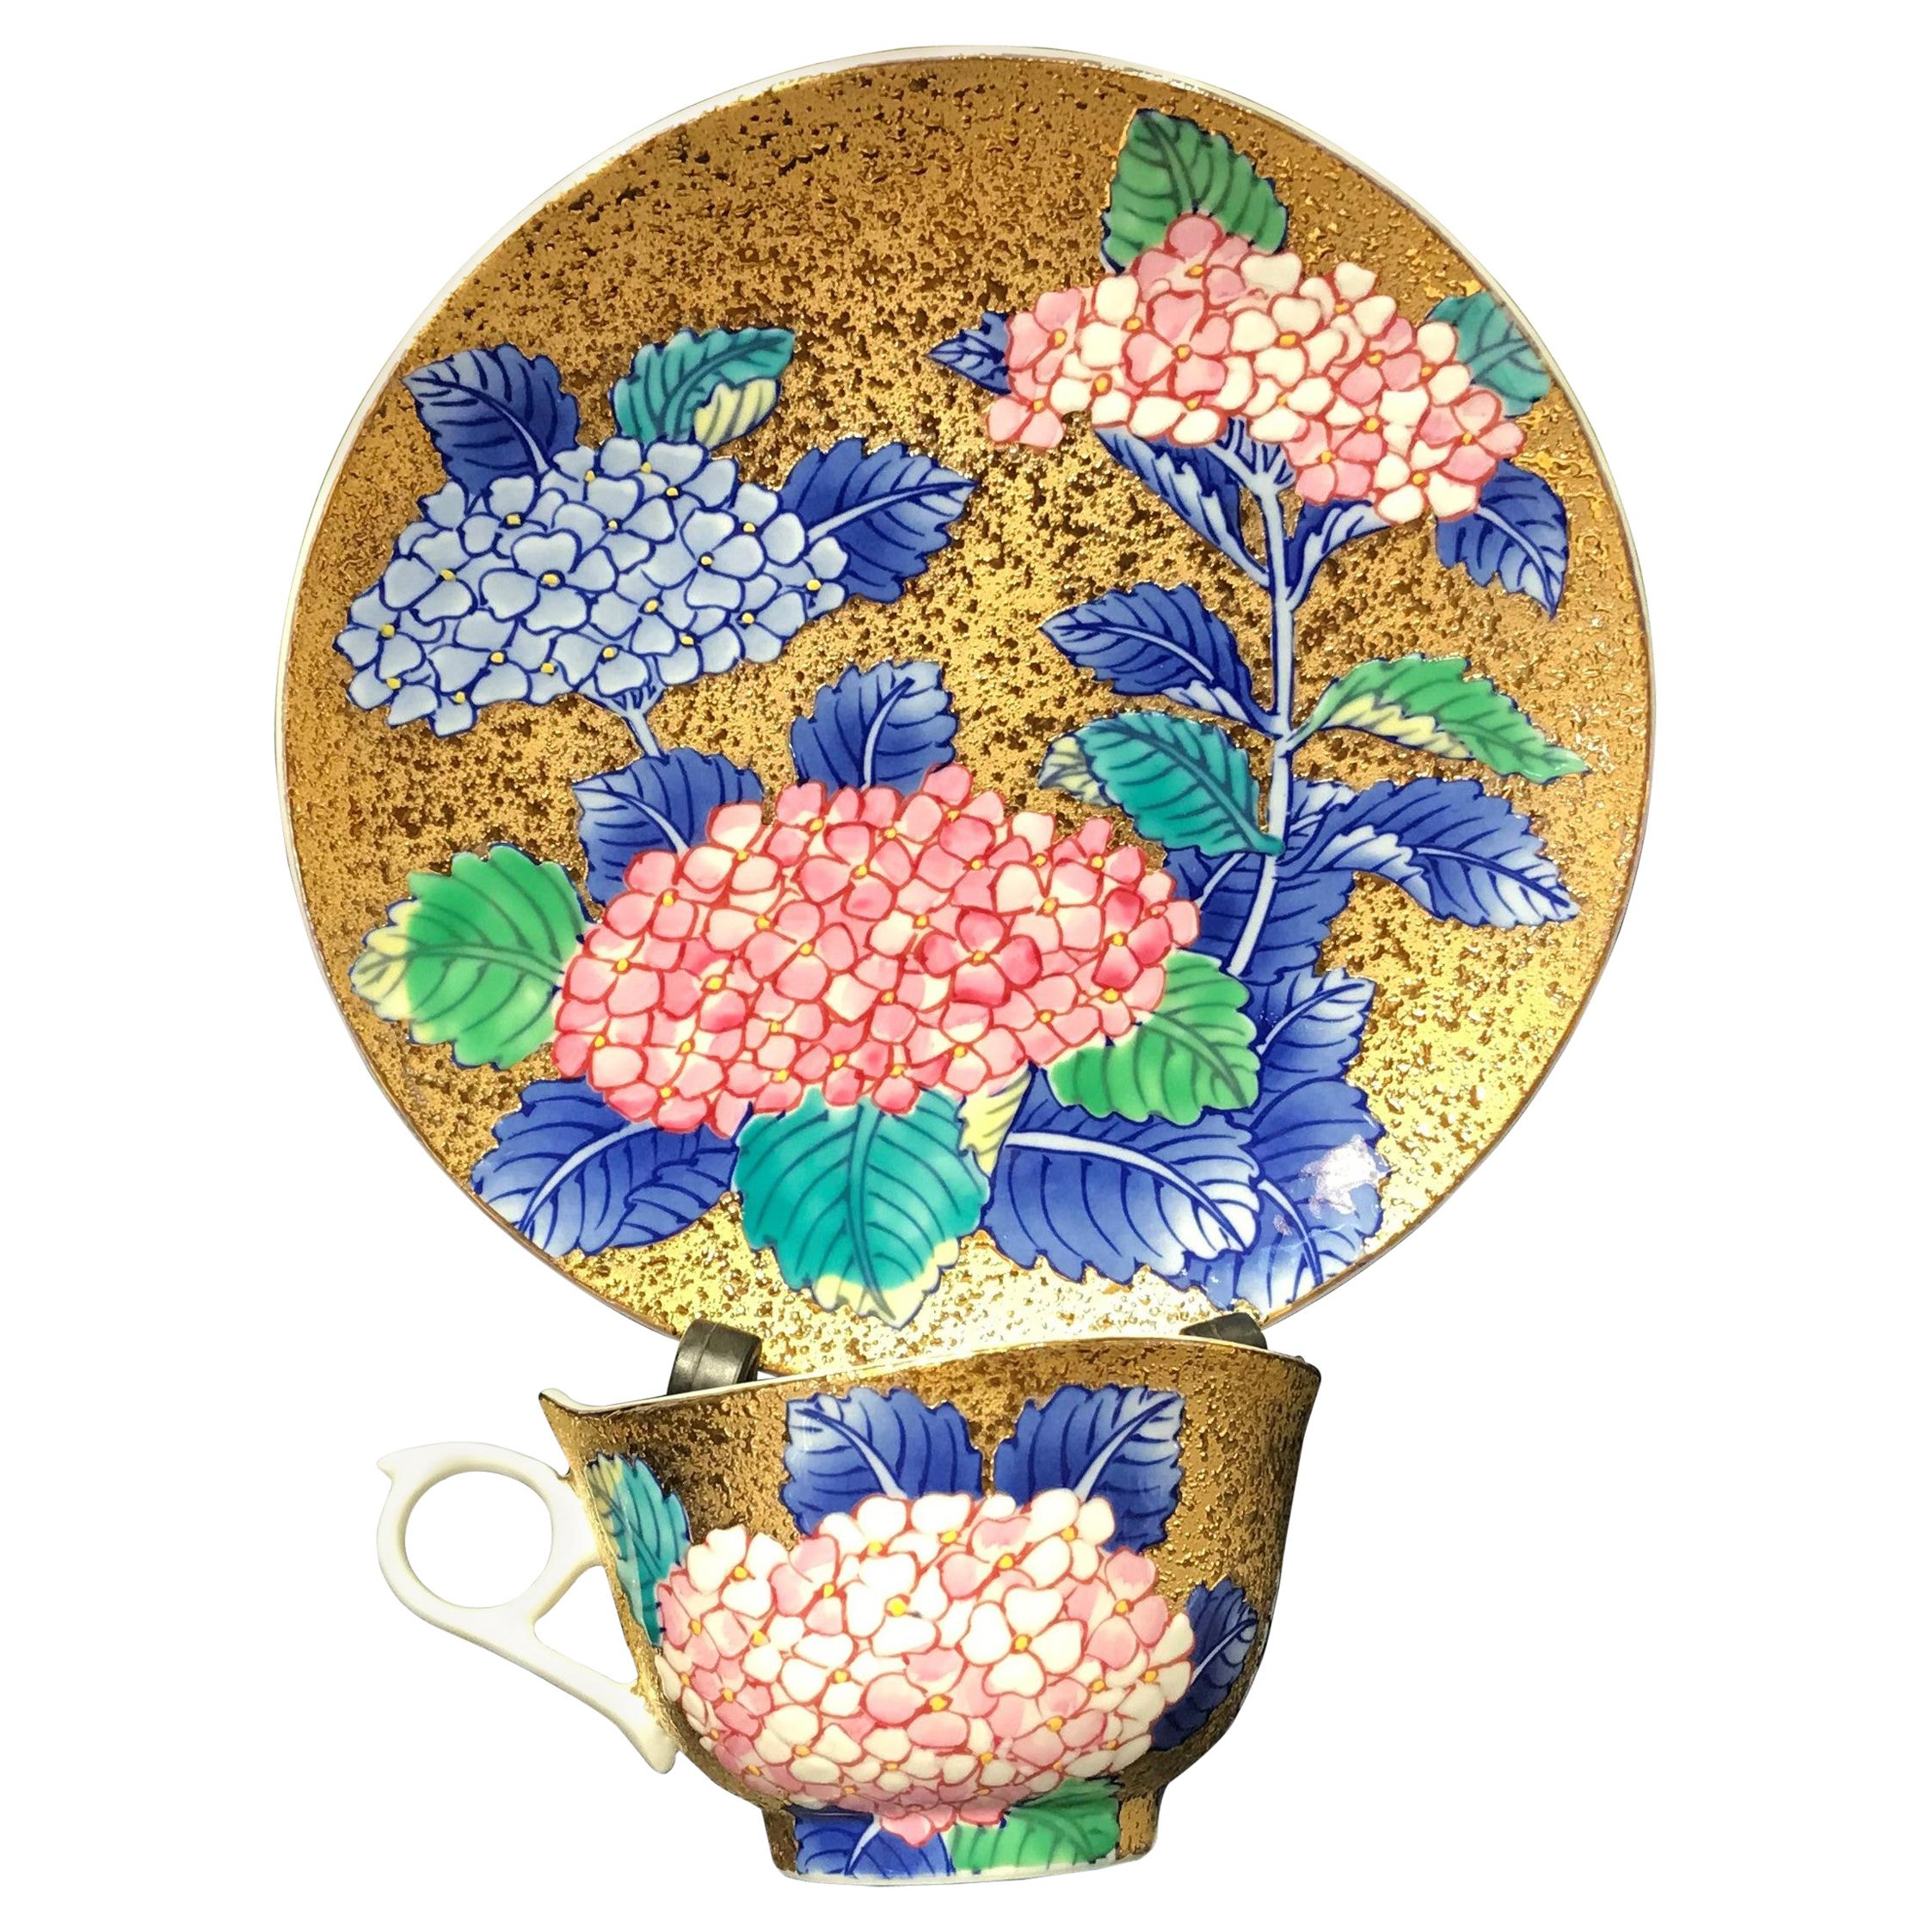 Tasse et soucoupe en porcelaine rose bleu or par un maître artiste japonais contemporain